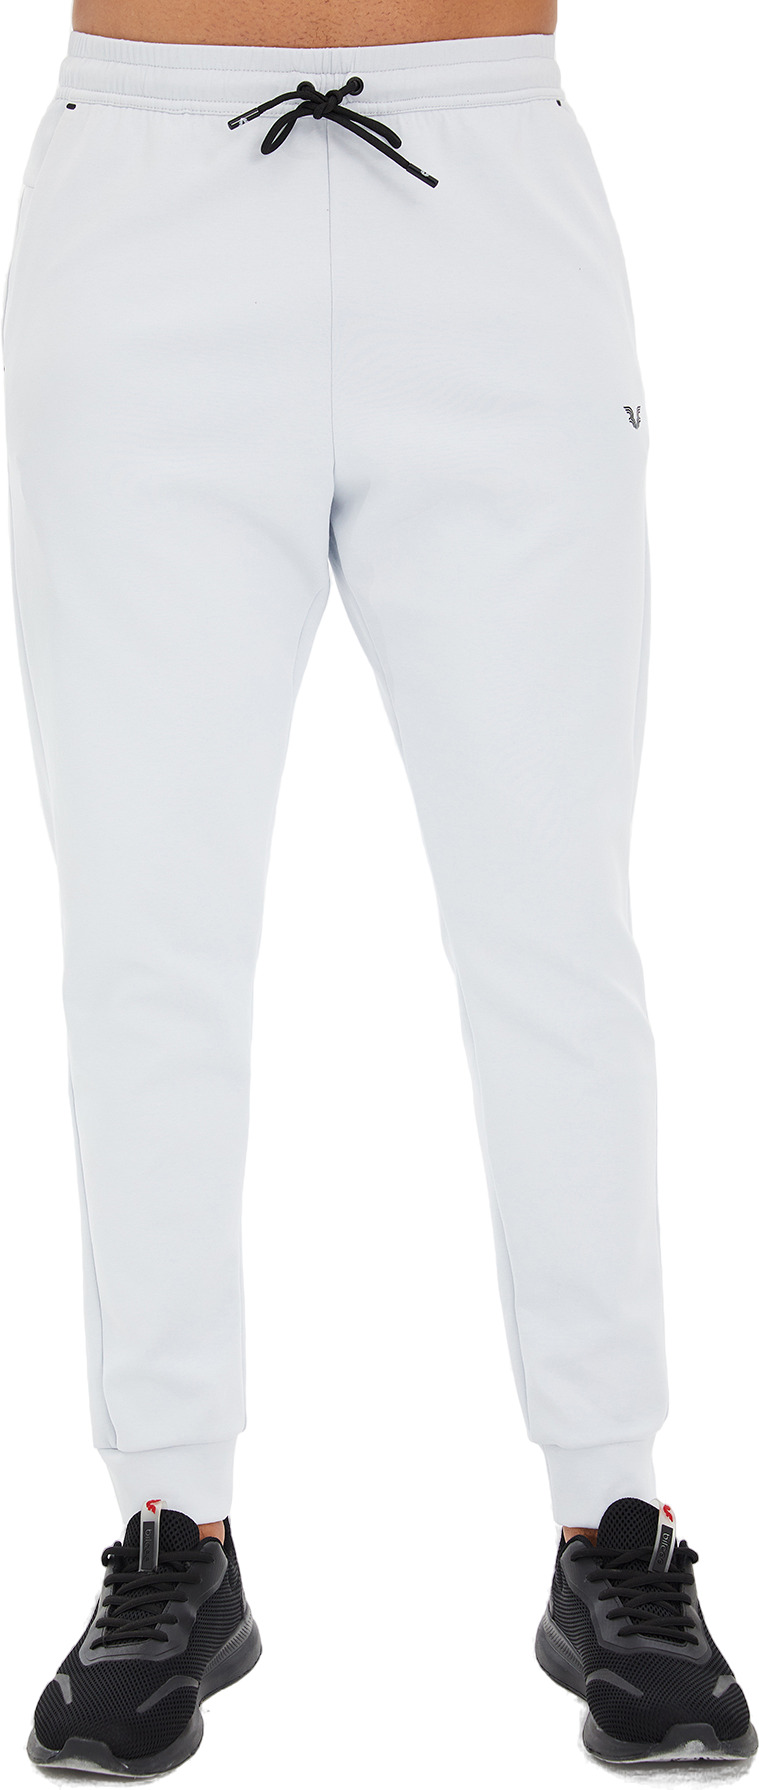 Спортивные брюки мужские Bilcee Men Knitting Pants белые L